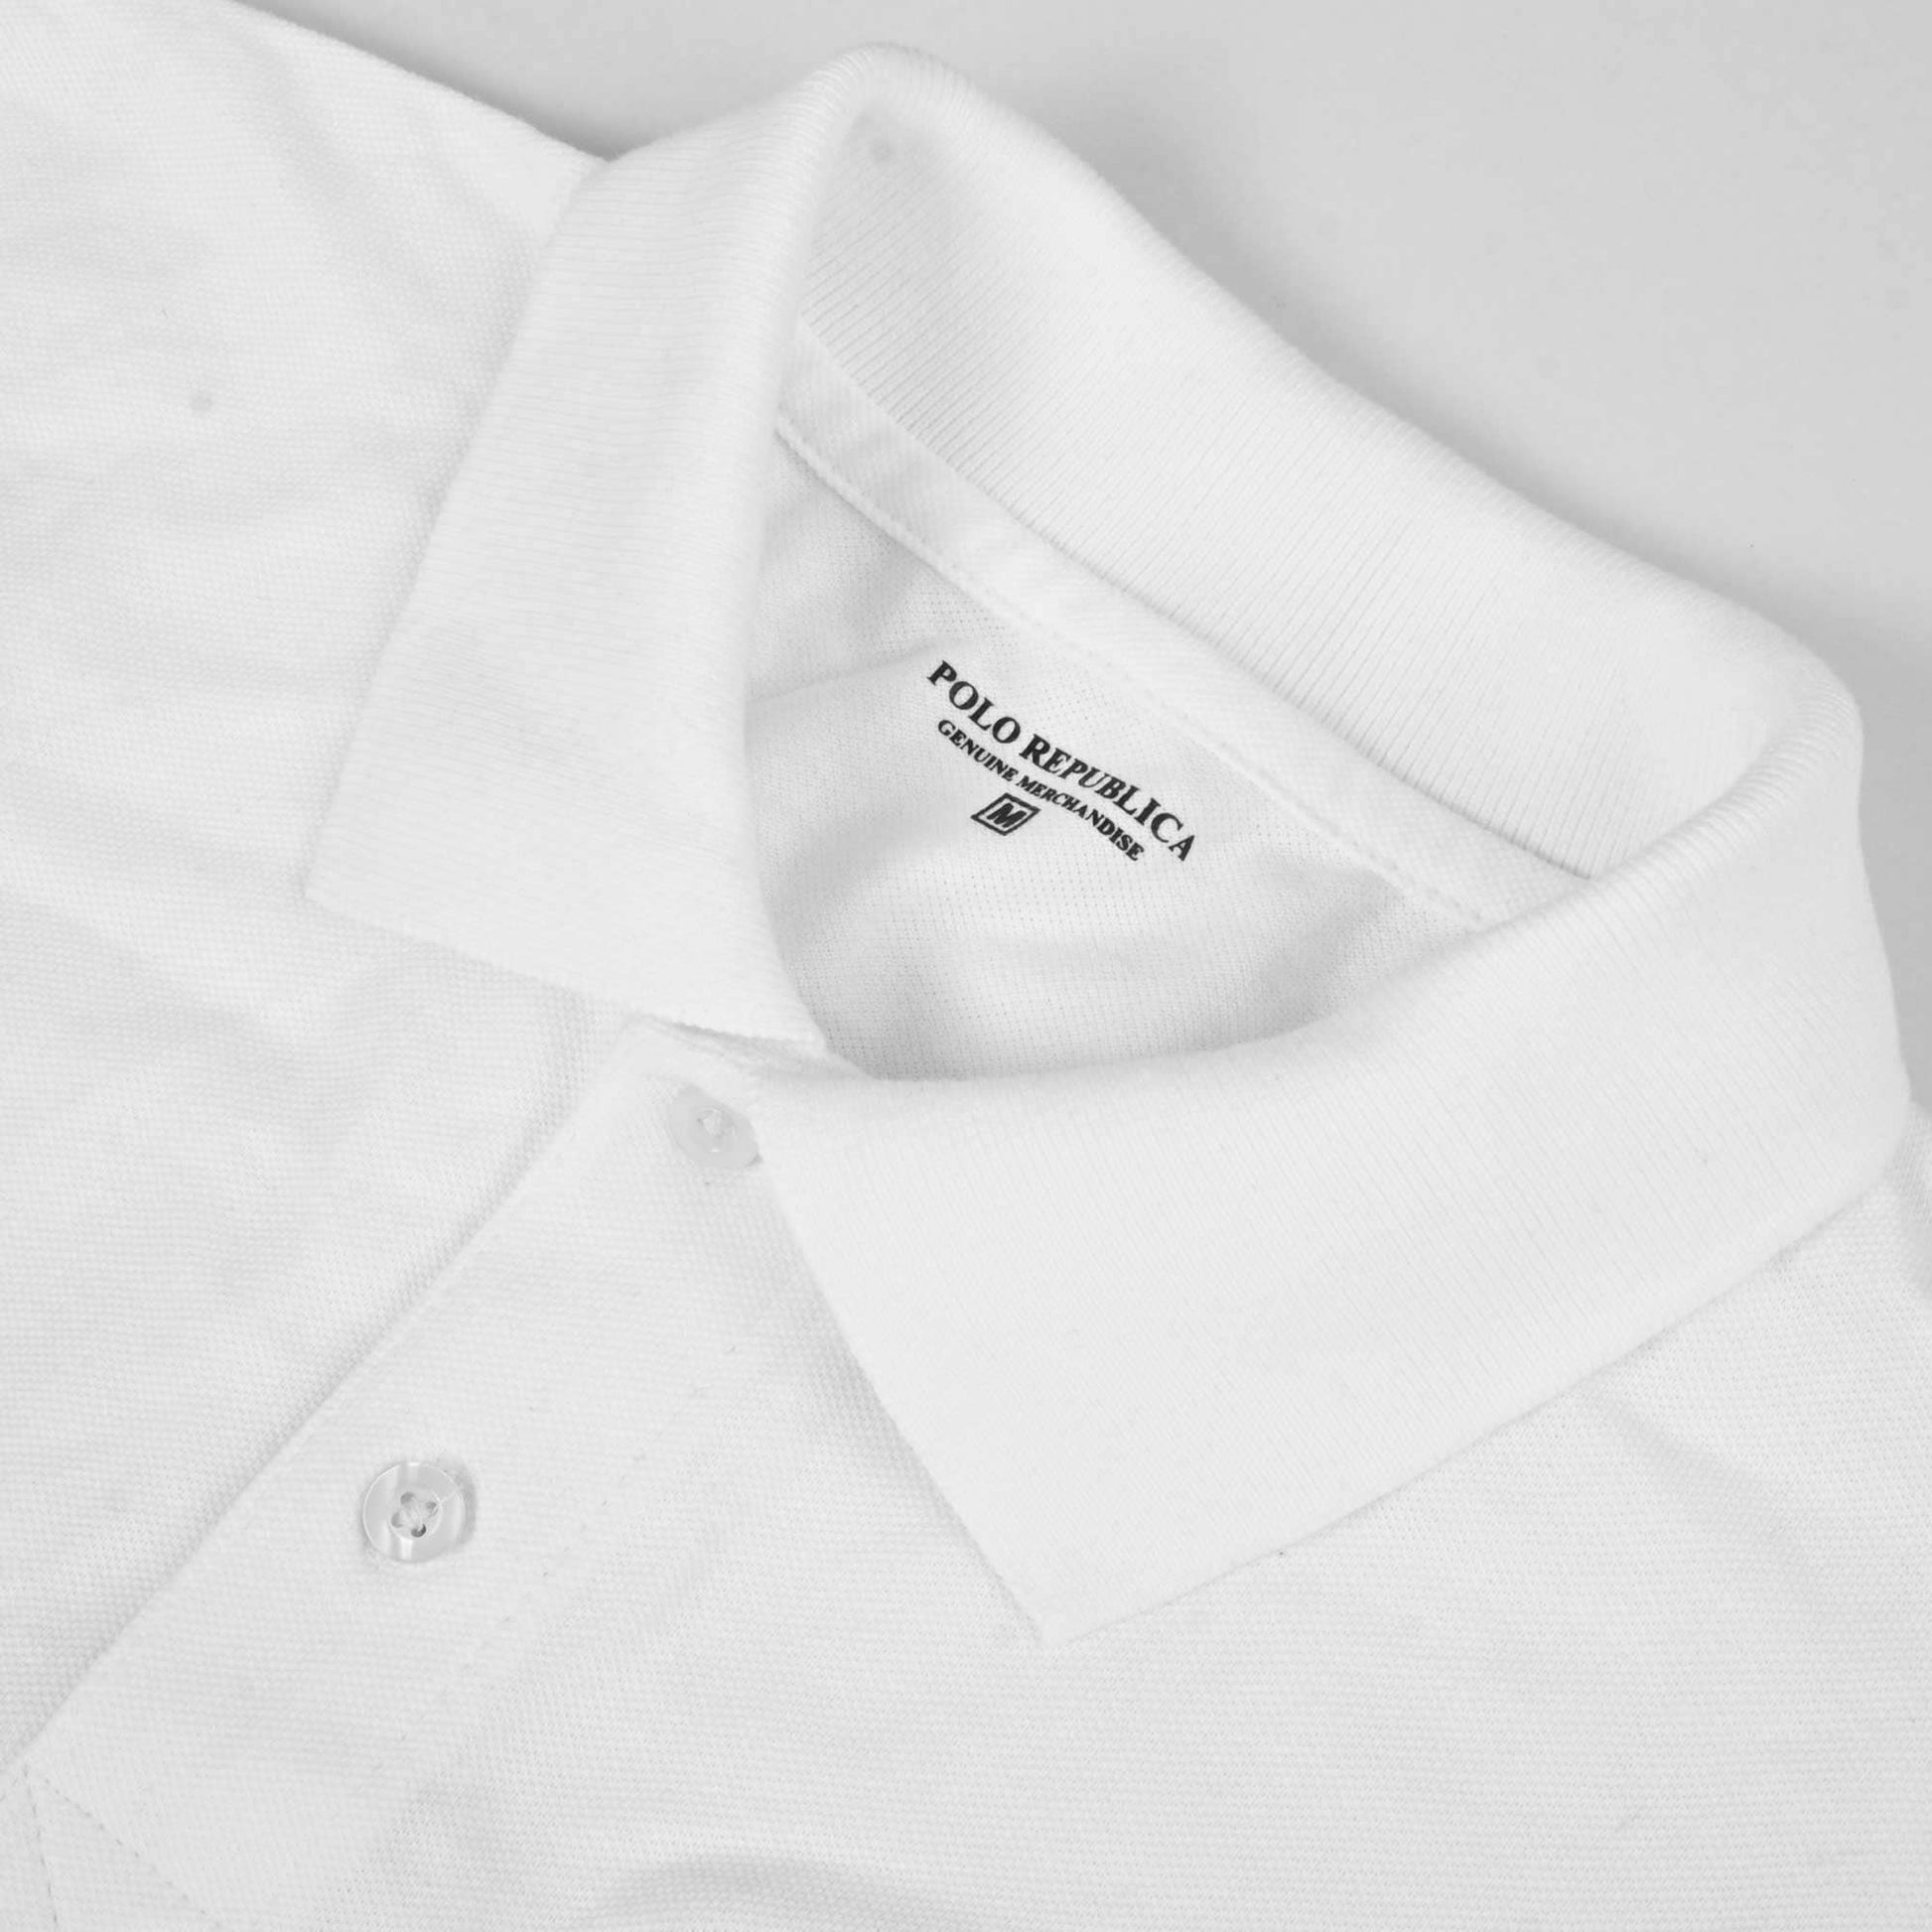 Polo Republica Men's Signature Pony & Polo Embroidered Short Sleeve Polo Shirt Men's Polo Shirt Polo Republica 